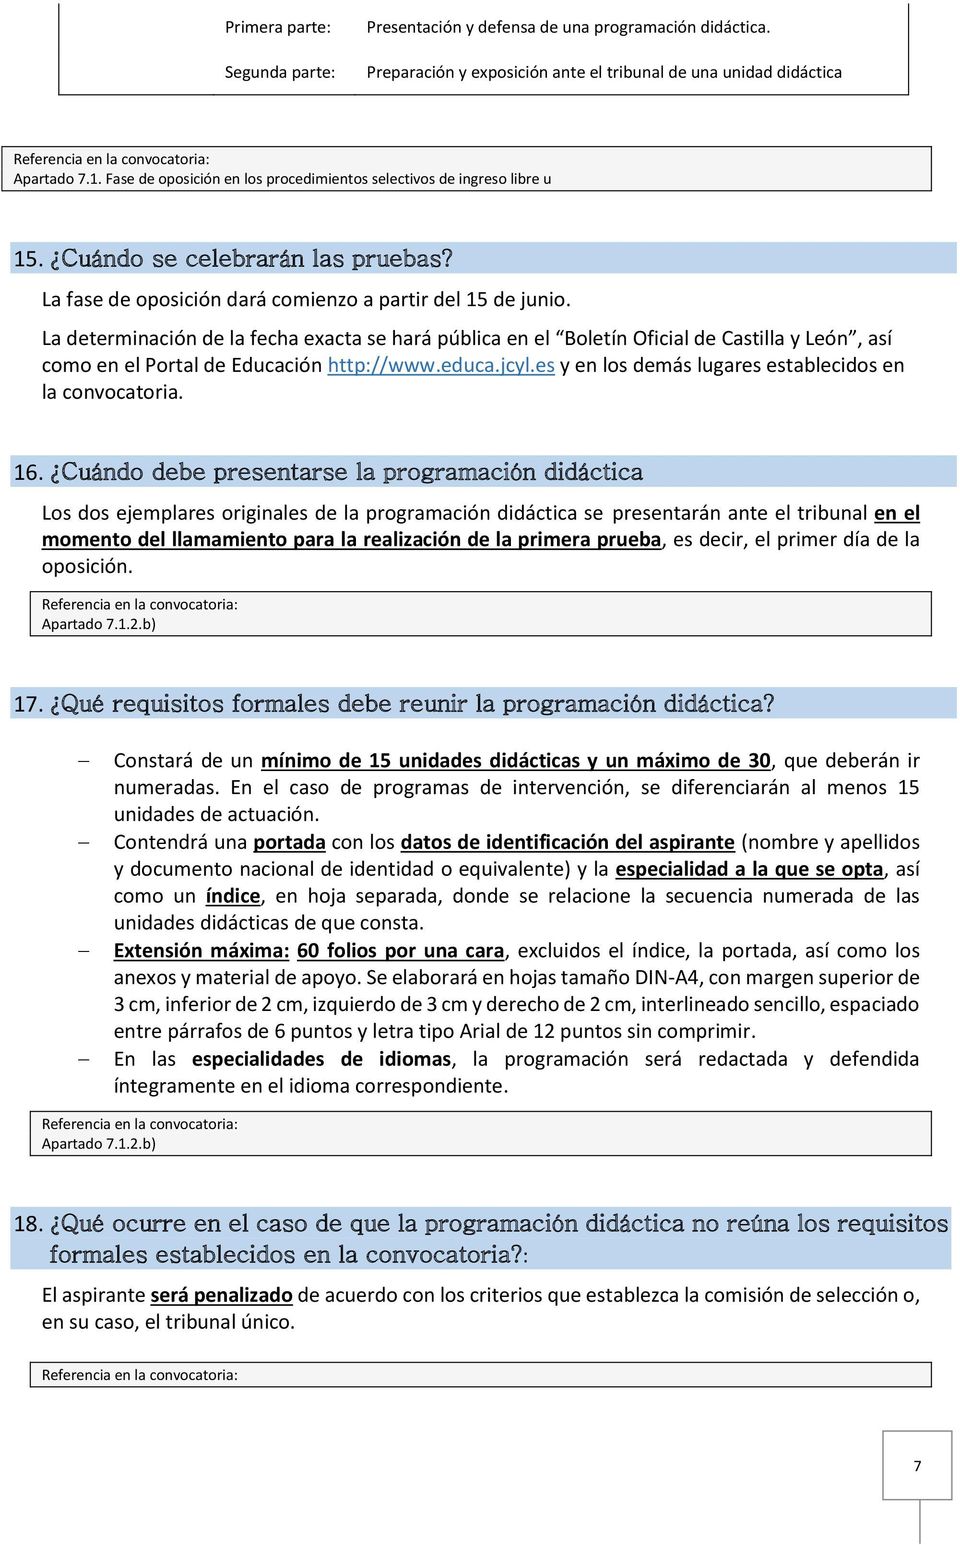 La determinación de la fecha exacta se hará pública en el Boletín Oficial de Castilla y León, así como en el Portal de Educación http://www.educa.jcyl.